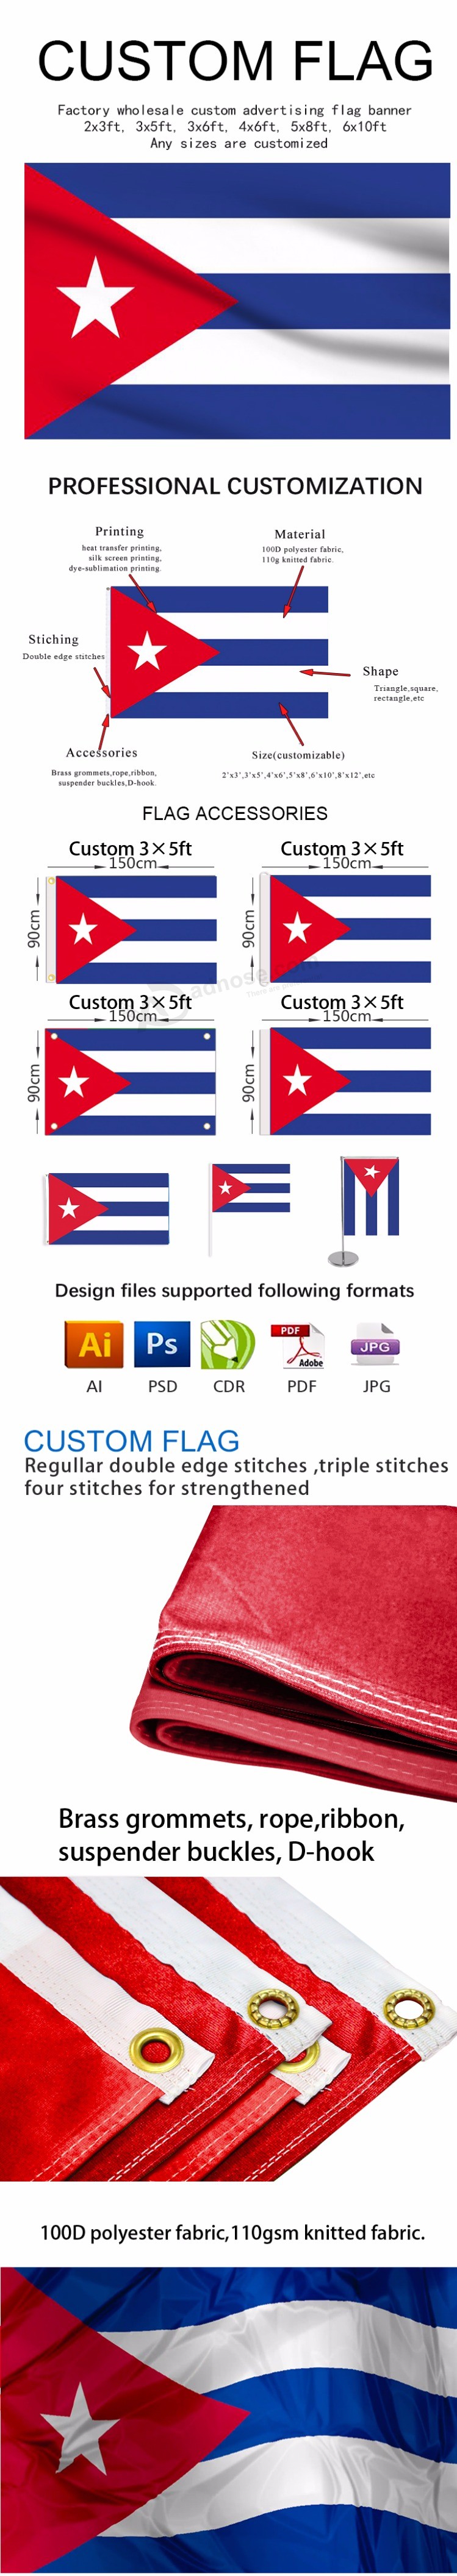 goedkopere prijs interlock stof digitale print nationale vlag